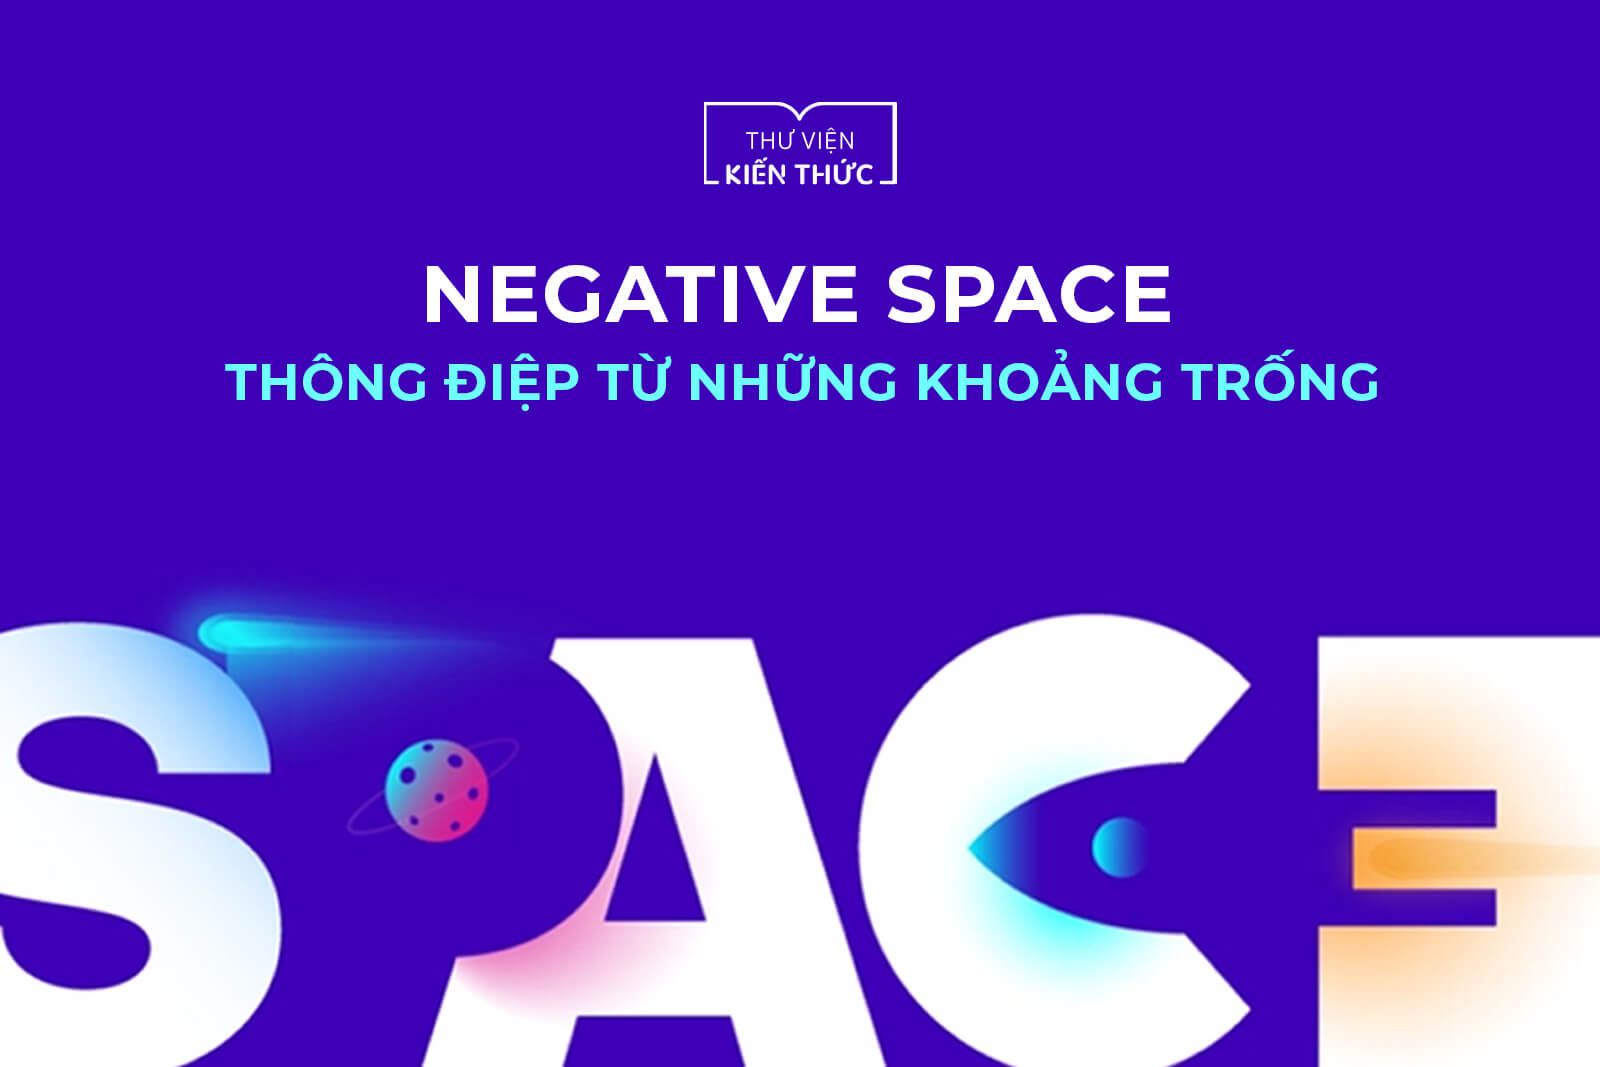 Negative Space: Thông điệp từ những khoảng trống